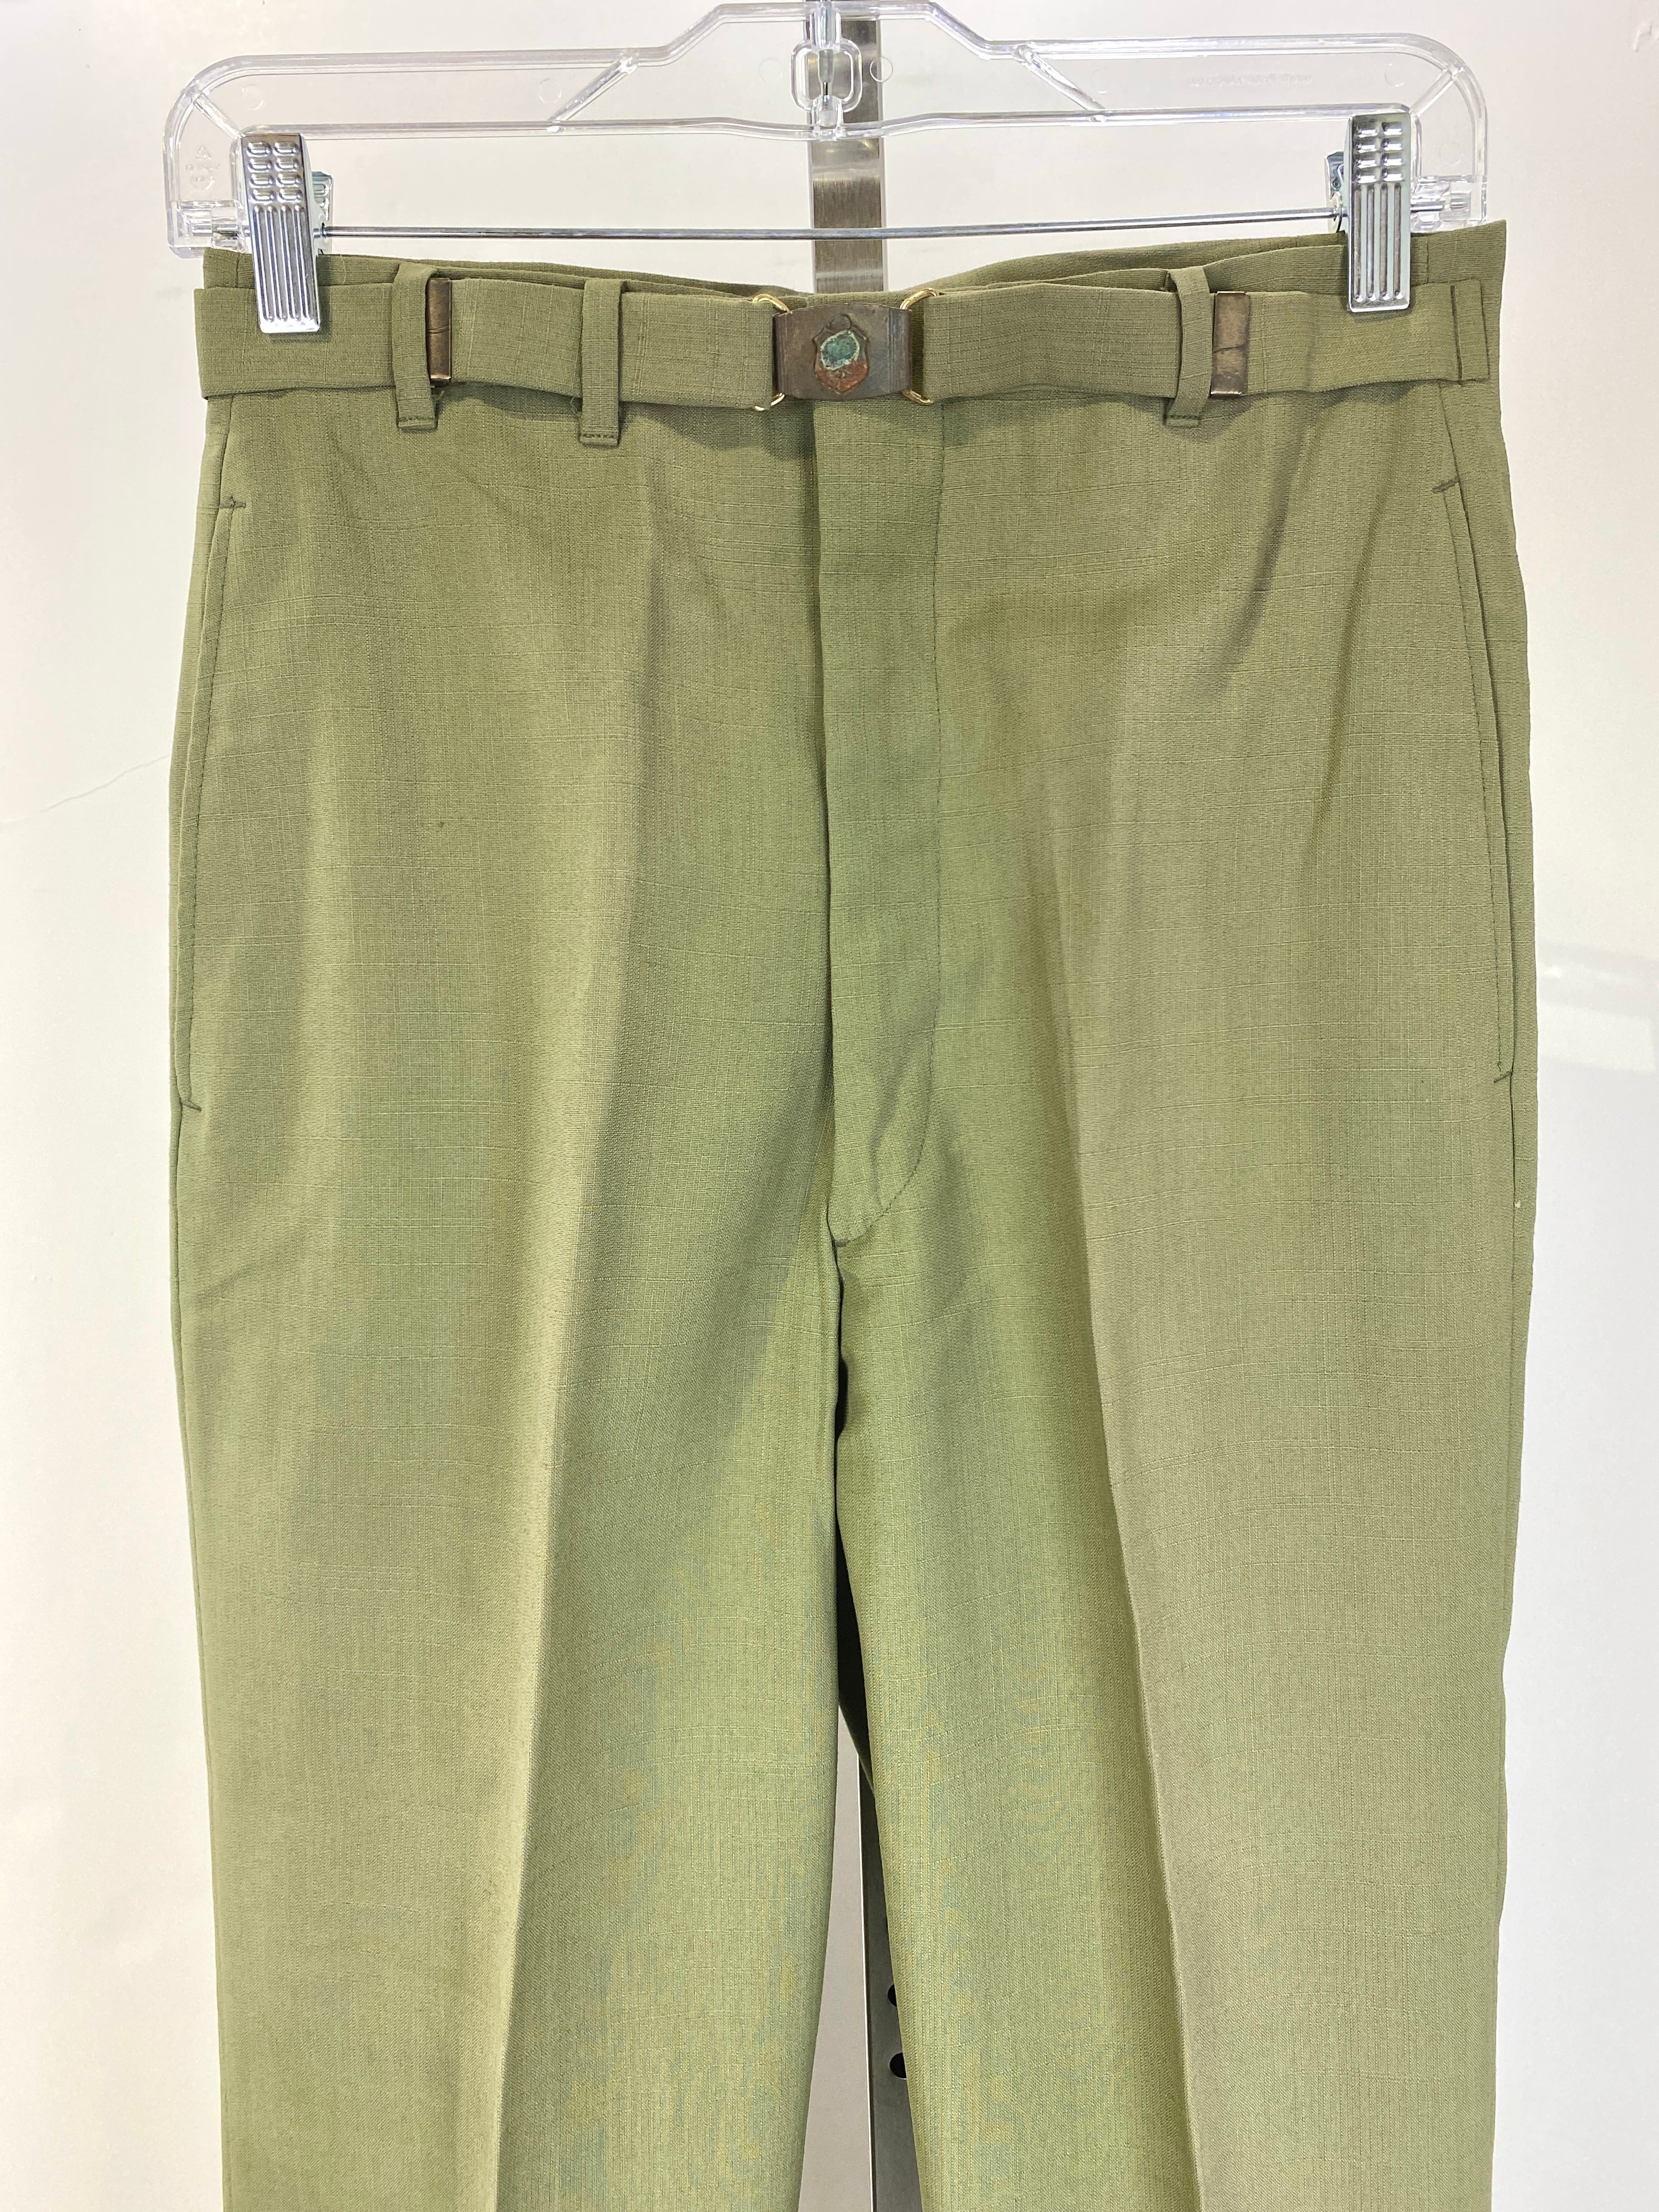 Vintage 1960s Deadstock Green Straight-Leg Slacks, Men's Polyester